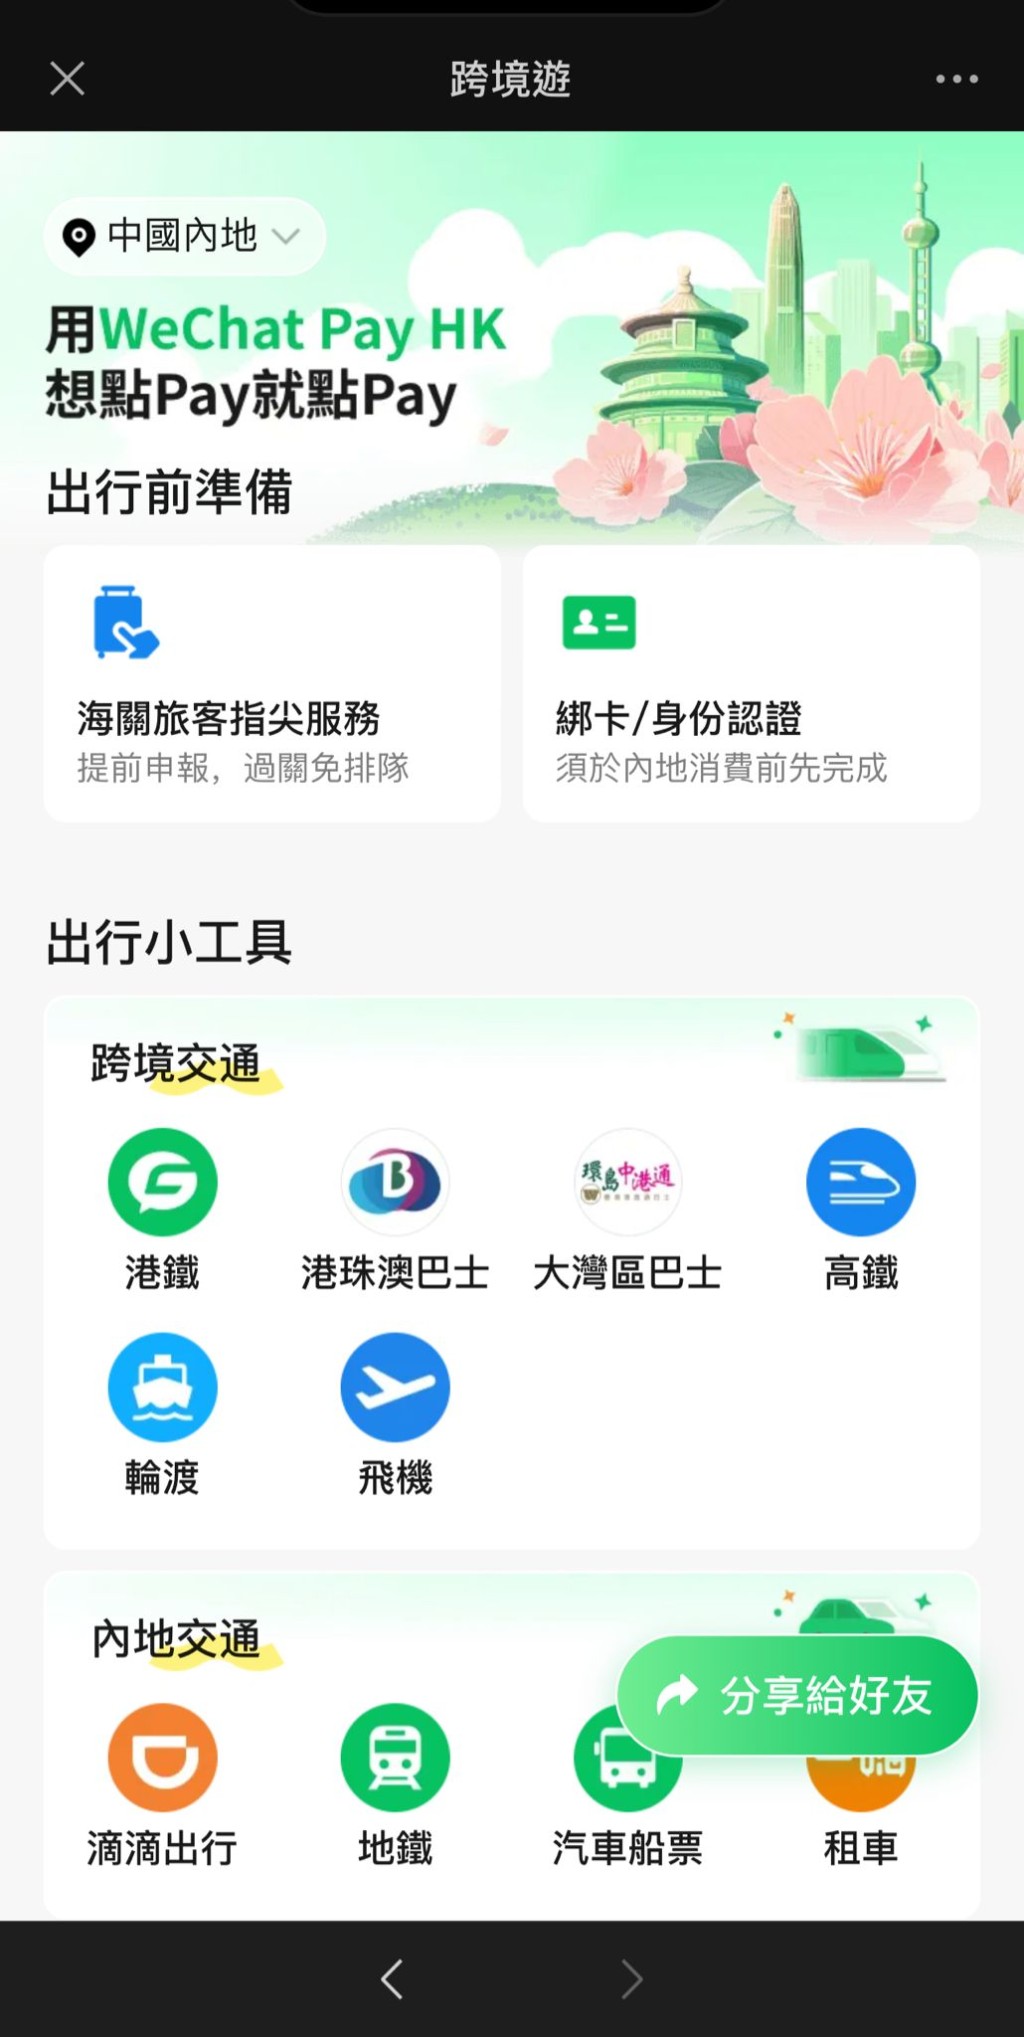 eChat微信用户只需点击「我」，再选择「服务」及「跨境游」，即可进入详细页面。